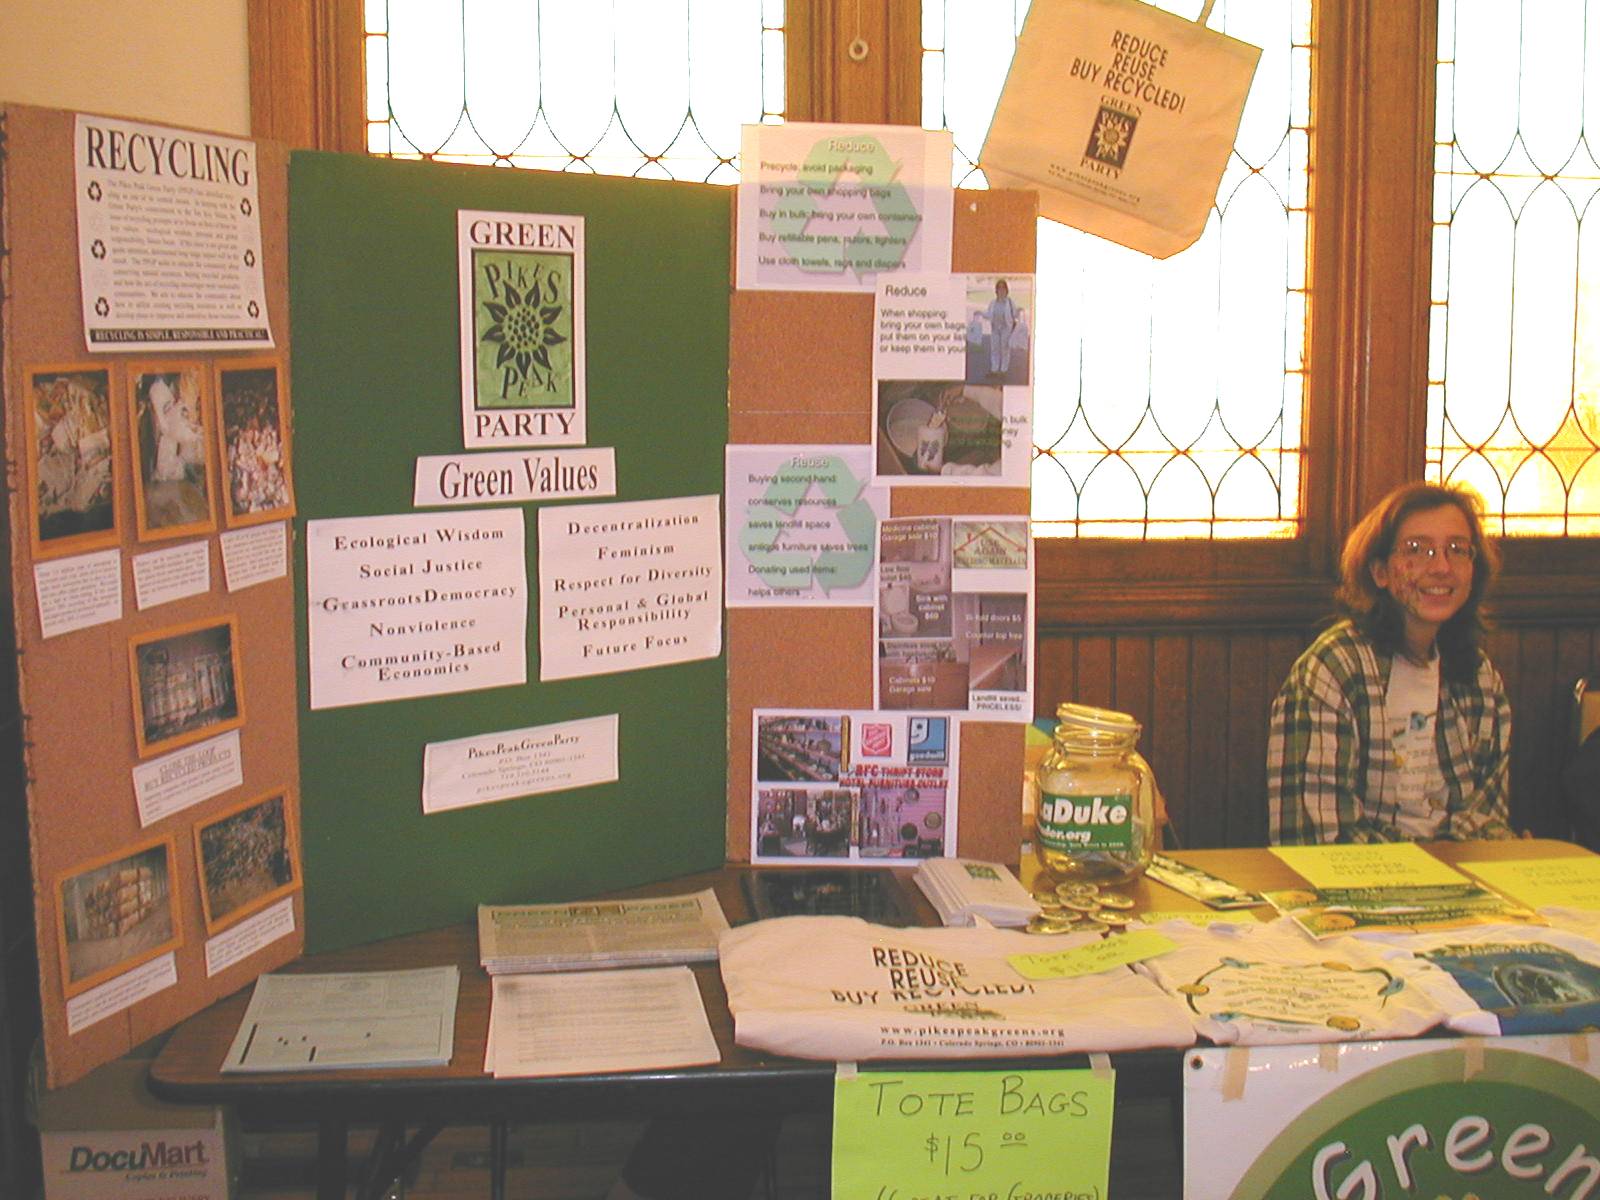 Green Party Recycling Fair Nov 10